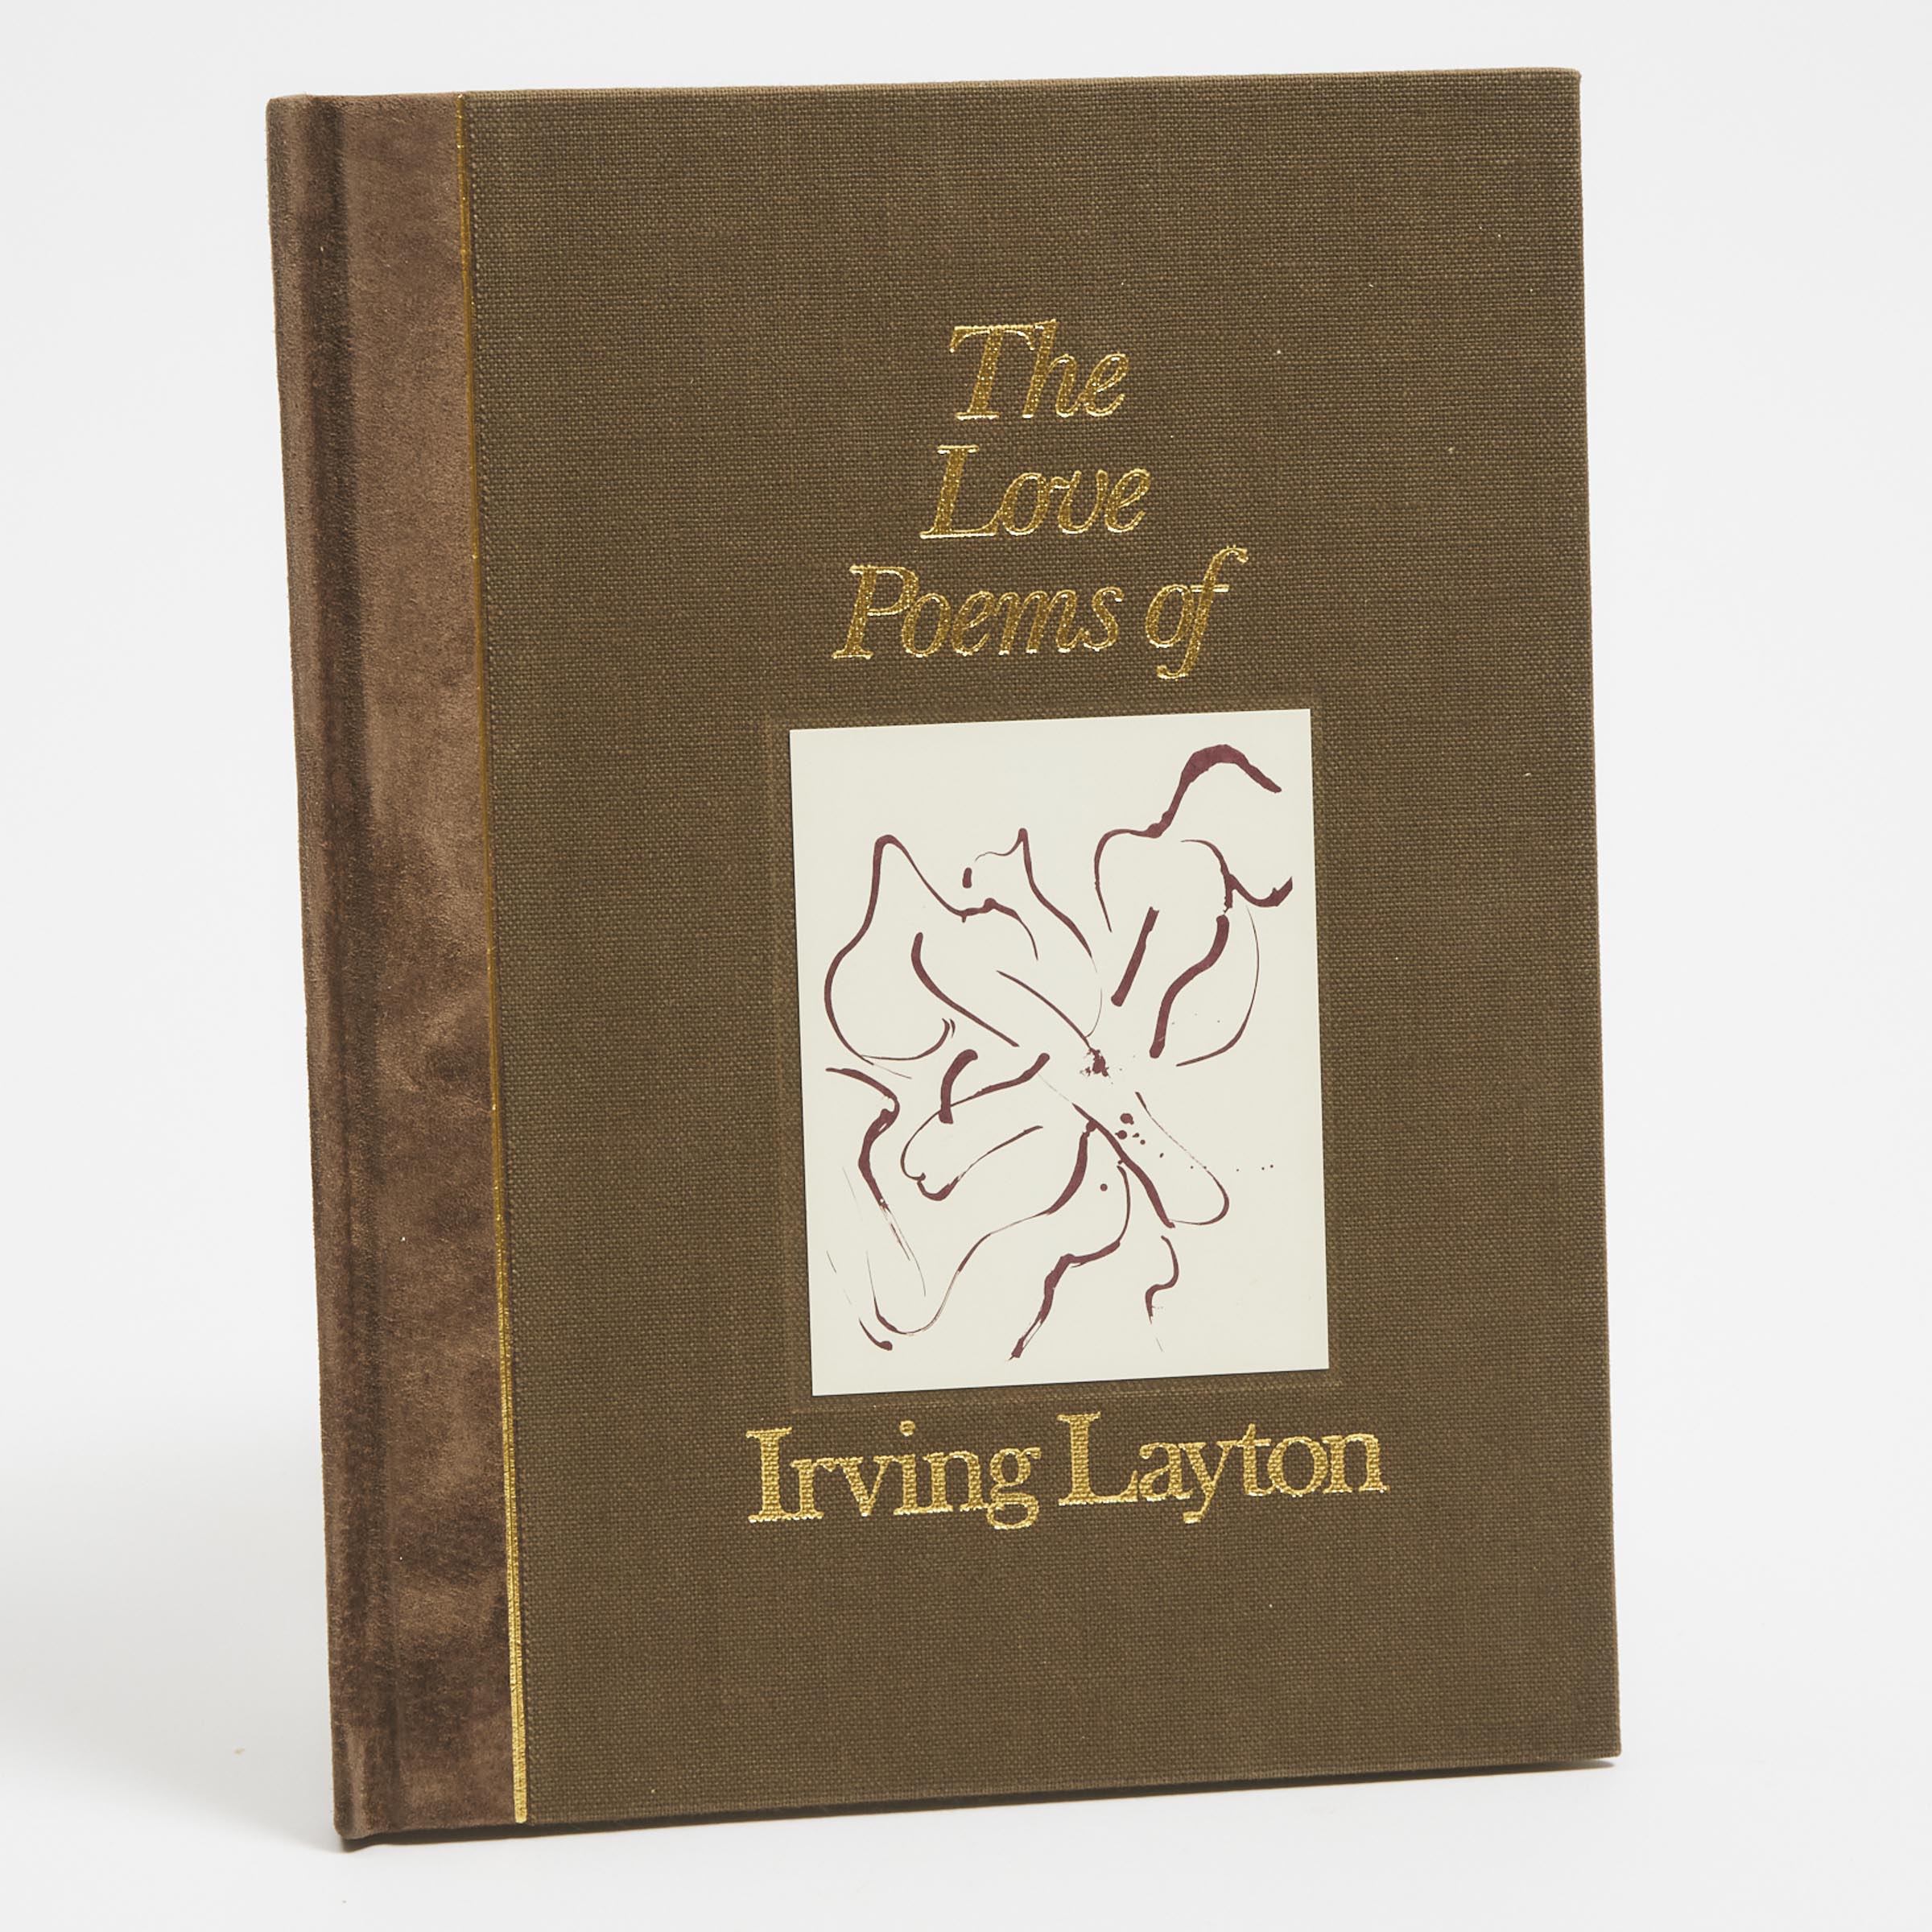 Irving Layton (1912-2006)